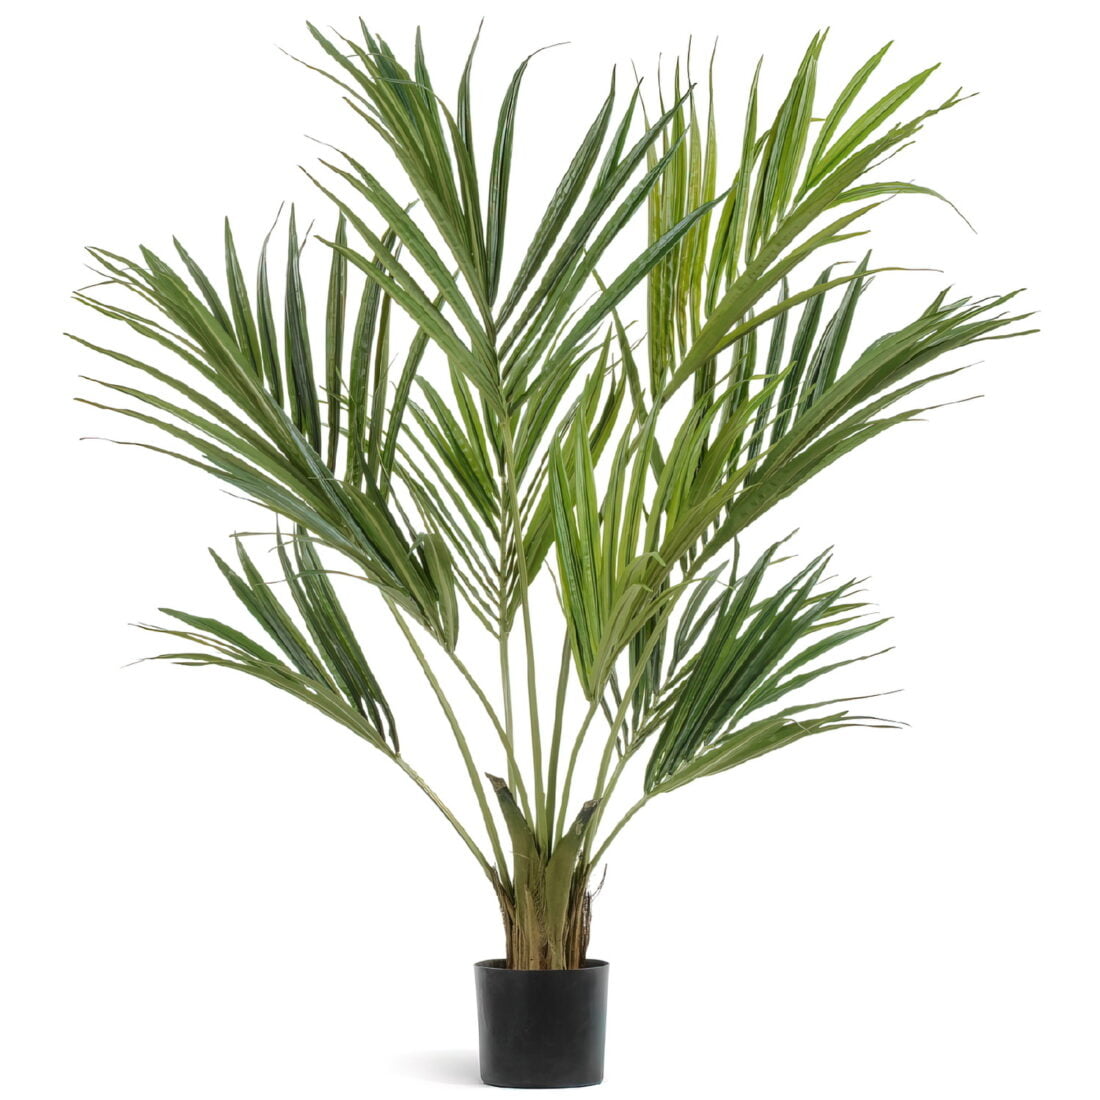 Искусственное растение Пальма Кентия (Ховея) де Люкс, высота 140 см